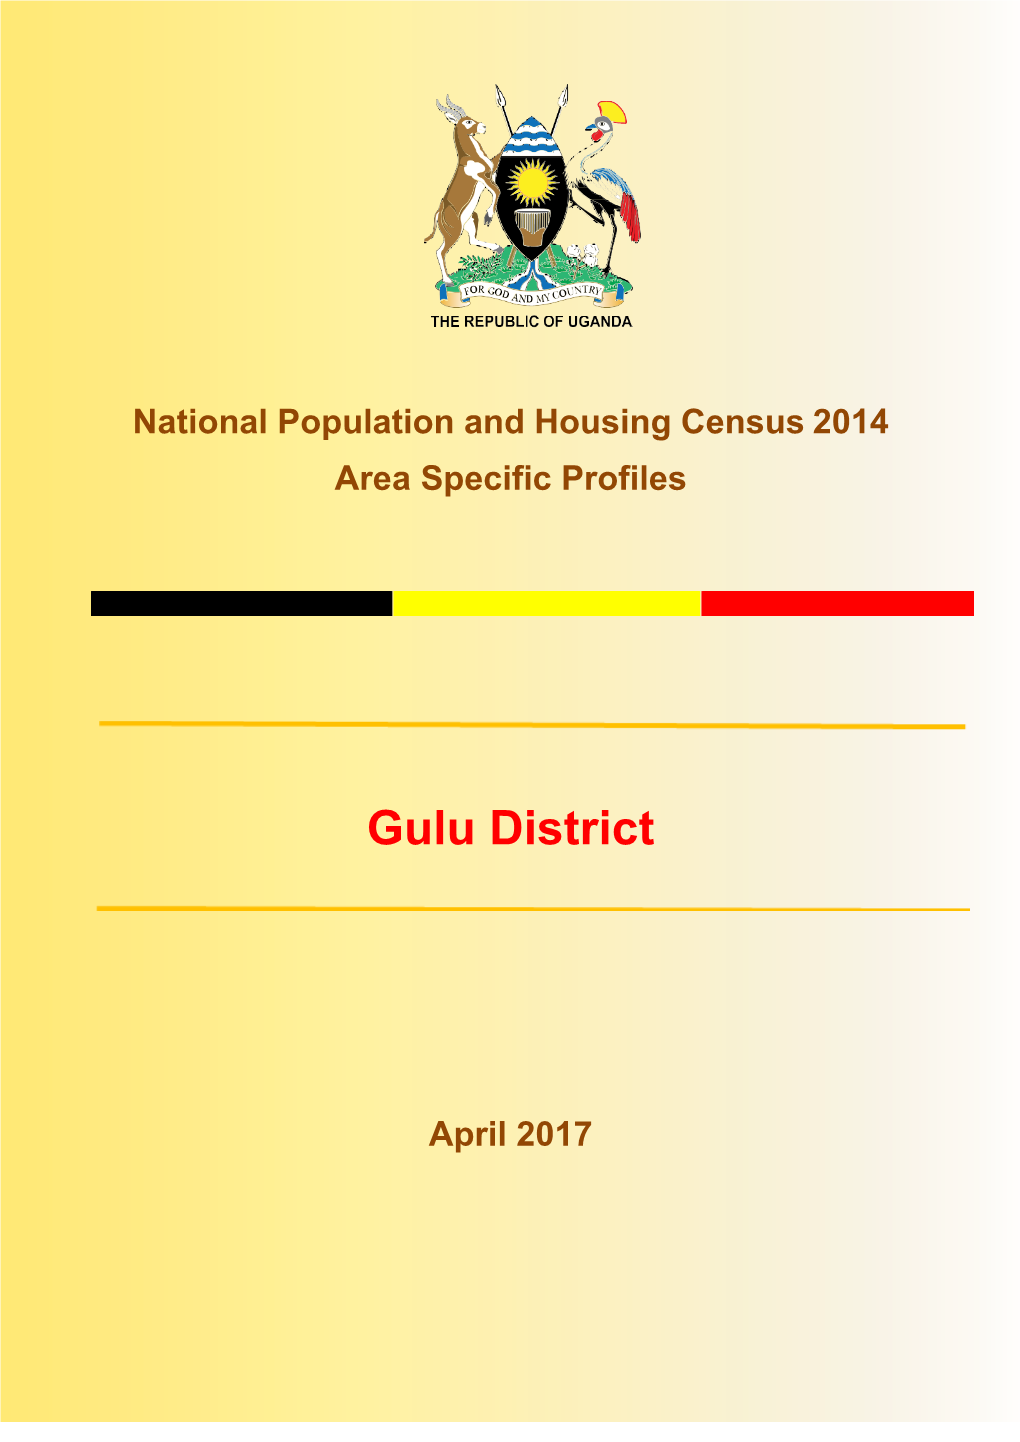 Gulu District